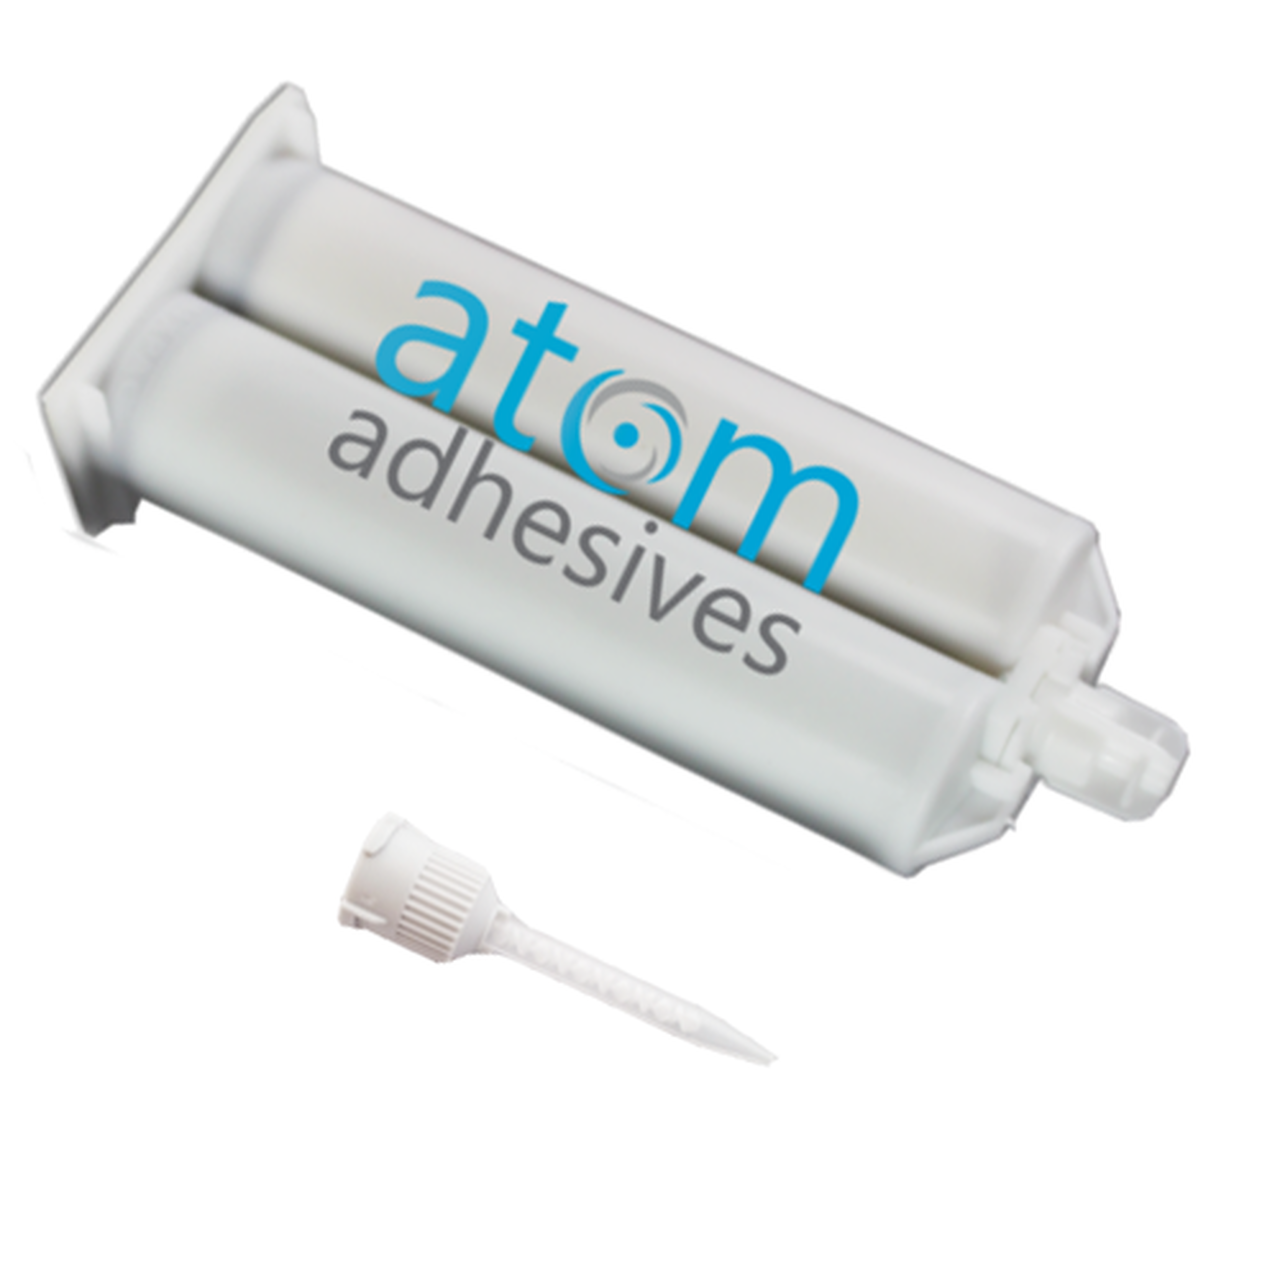 FDA Compliant Two Component Epoxy Adhesive